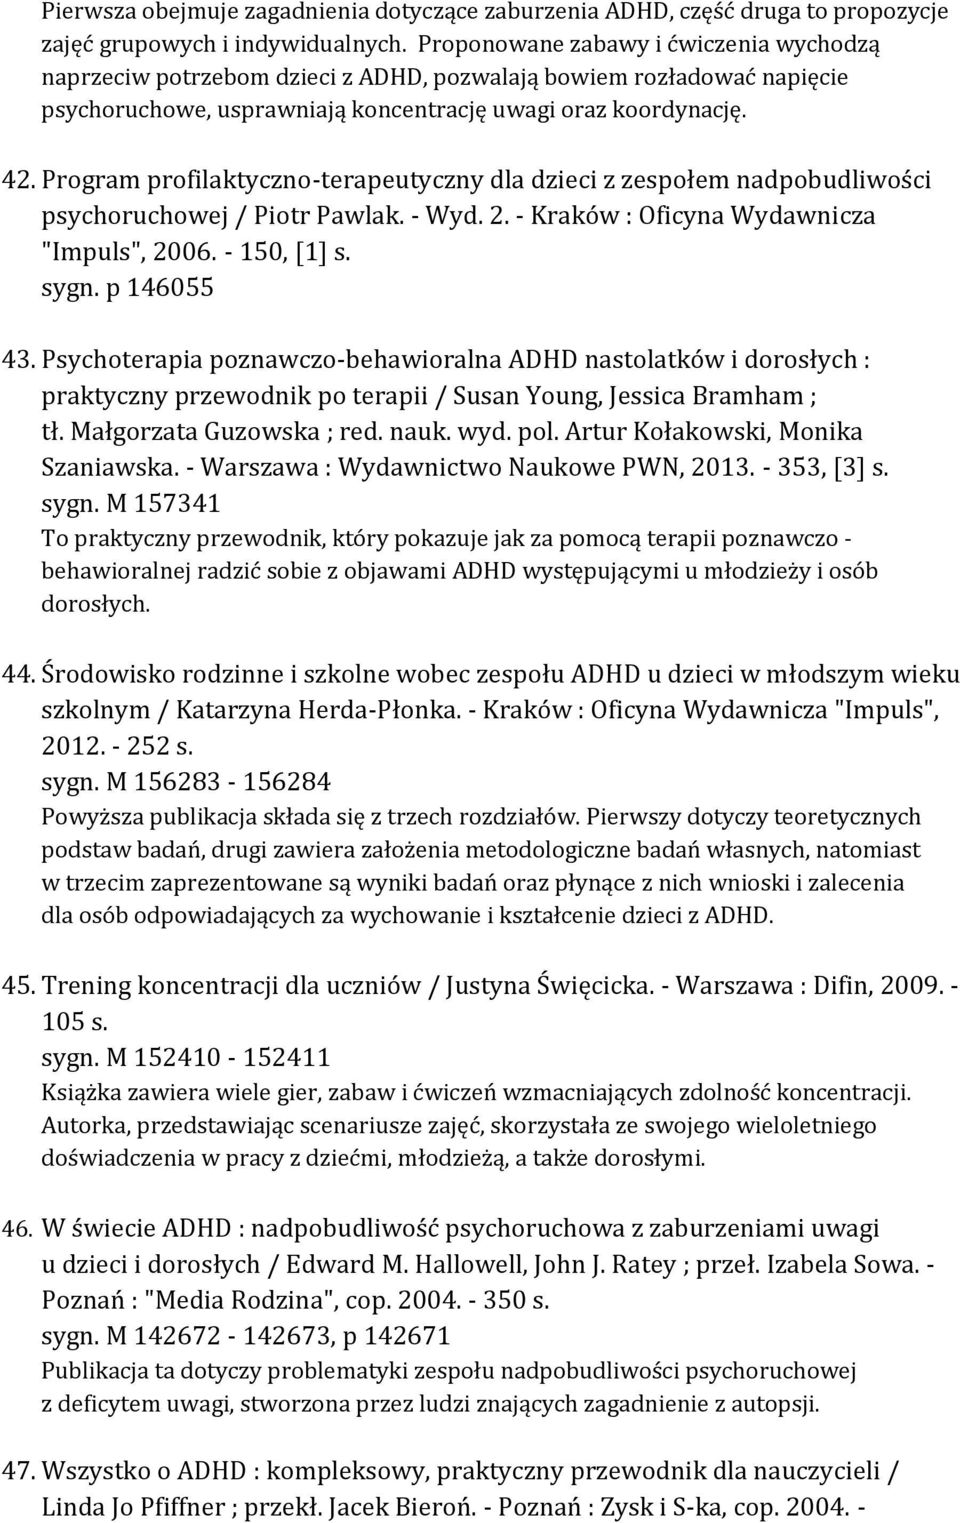 Program profilaktyczno-terapeutyczny dla dzieci z zespołem nadpobudliwości psychoruchowej / Piotr Pawlak. - Wyd. 2. - Kraków : Oficyna Wydawnicza "Impuls", 2006. - 150, [1] s. sygn. p 146055 43.